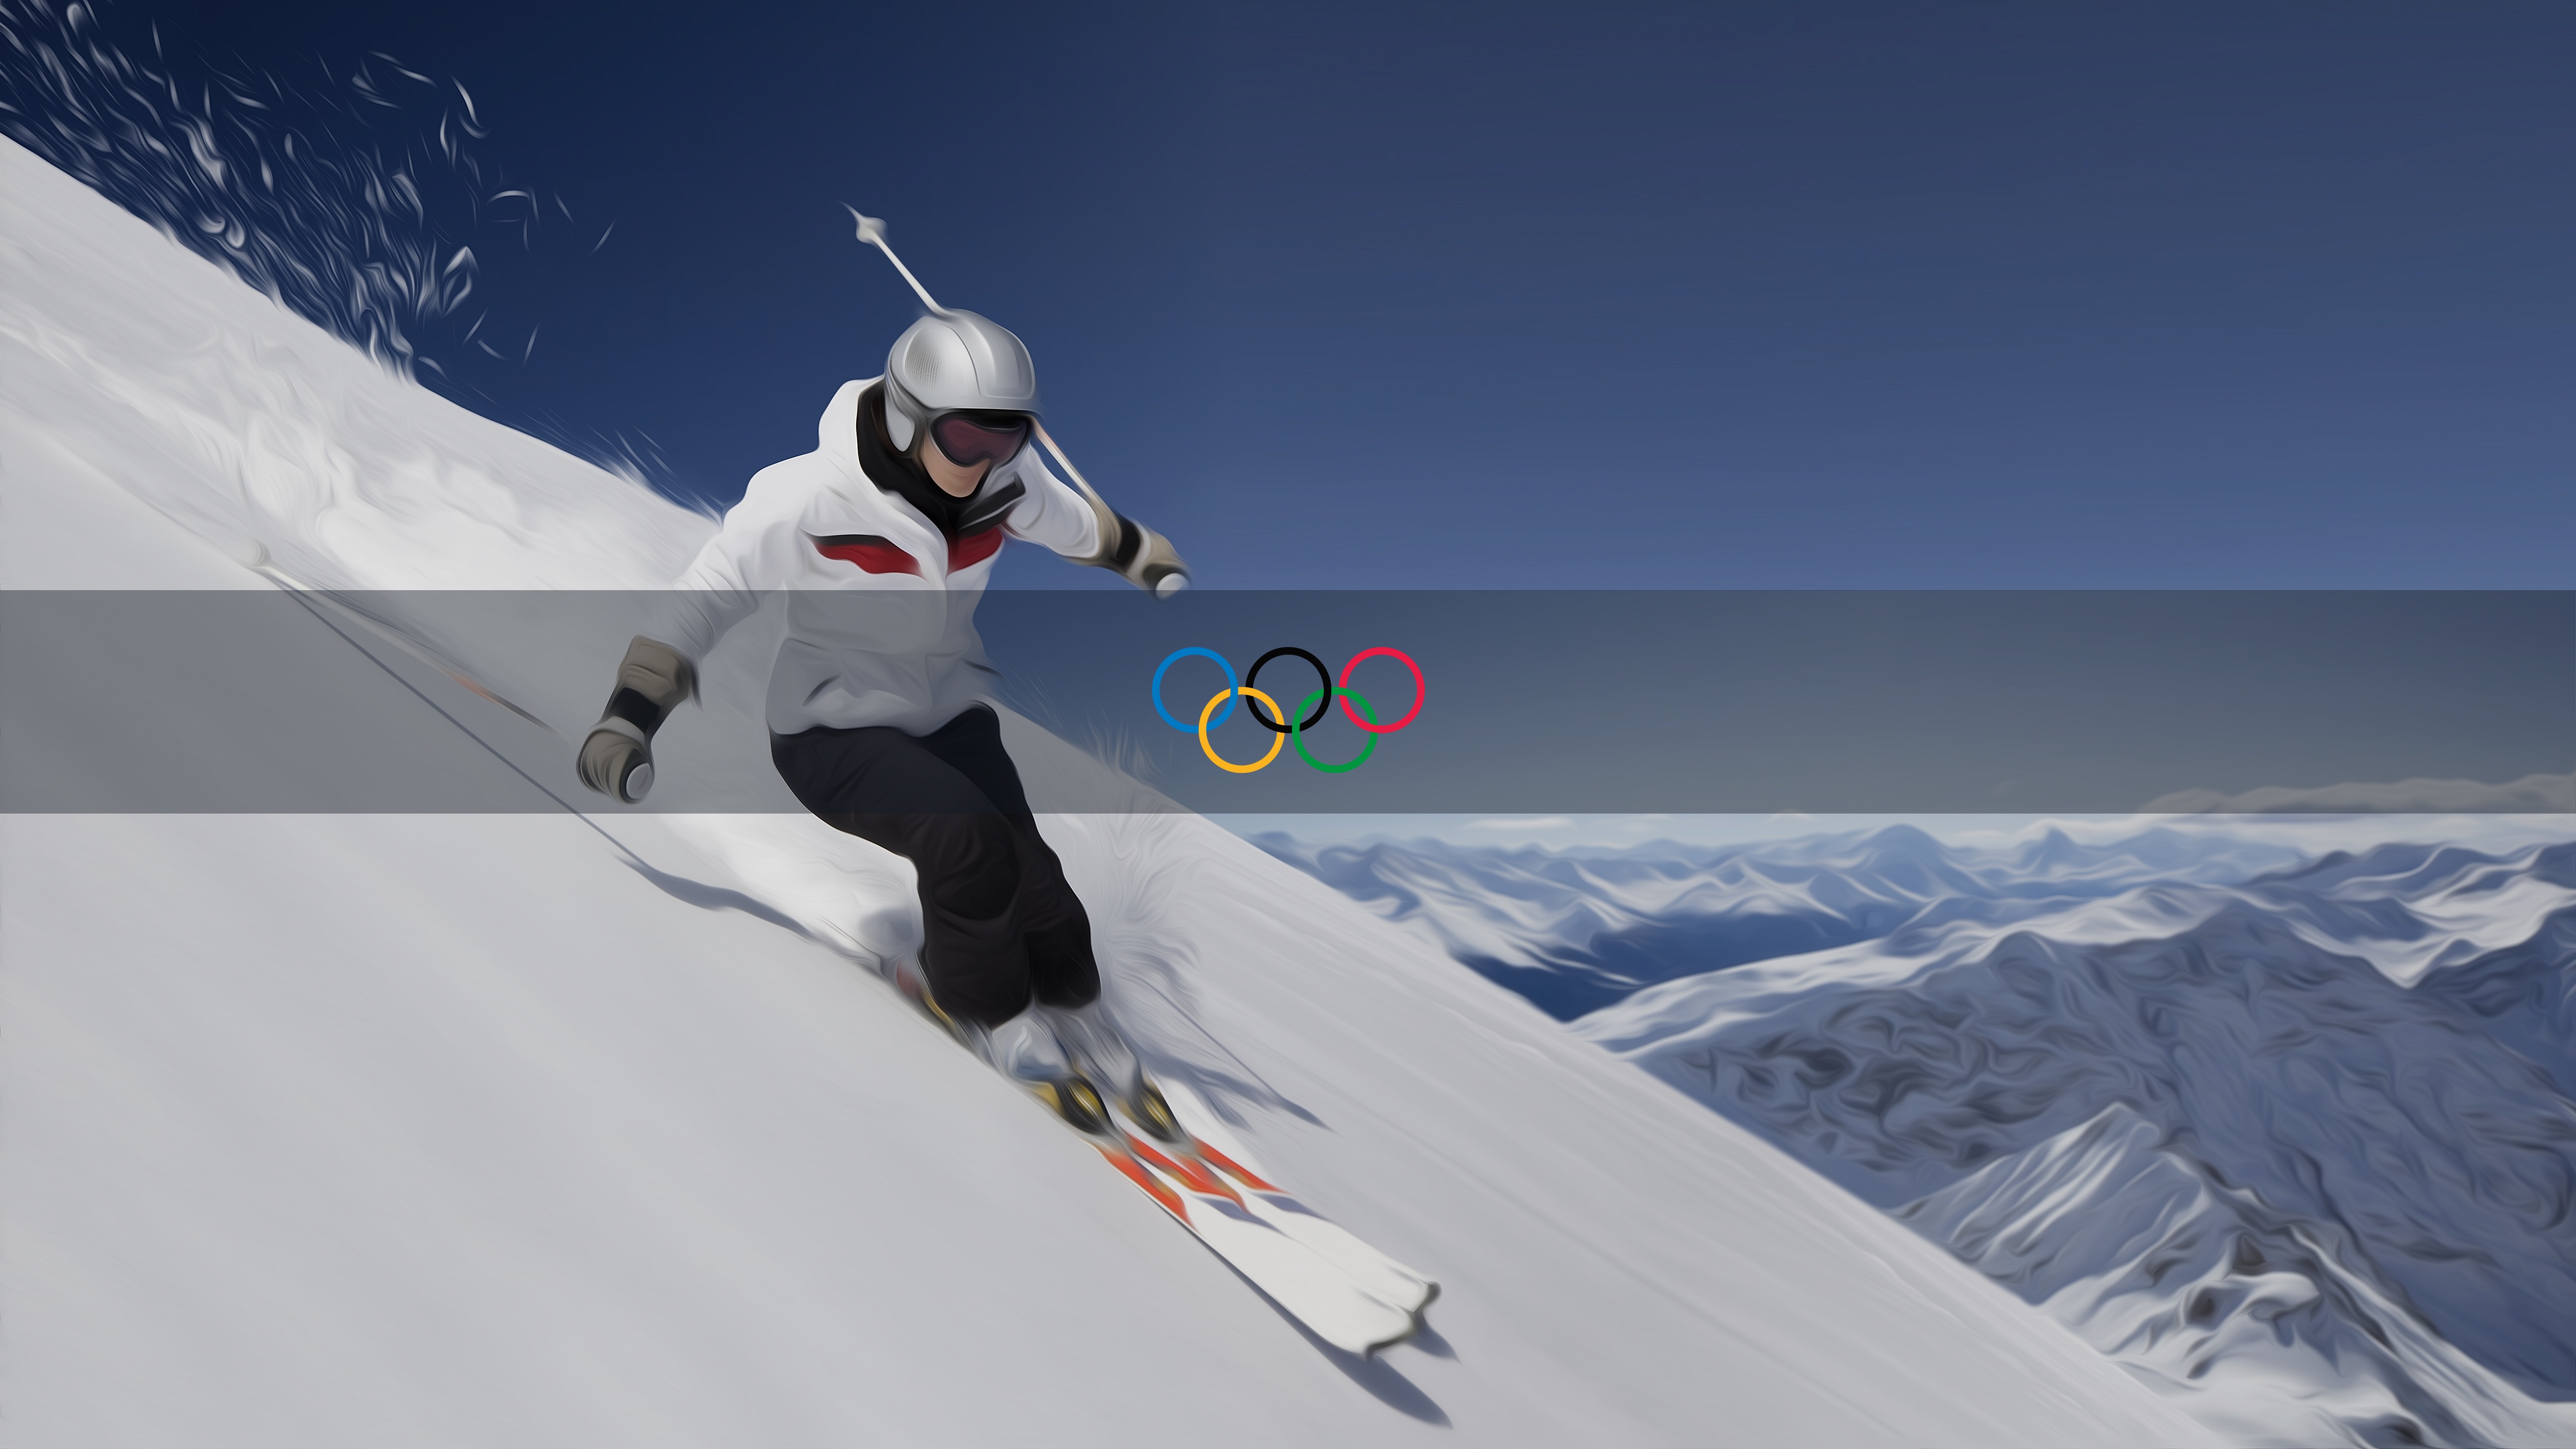 オリンピックの壁紙 雪 スキー エクストリームスポーツ 屋外レクリエーション フリースタイル スキー Wallpaperuse